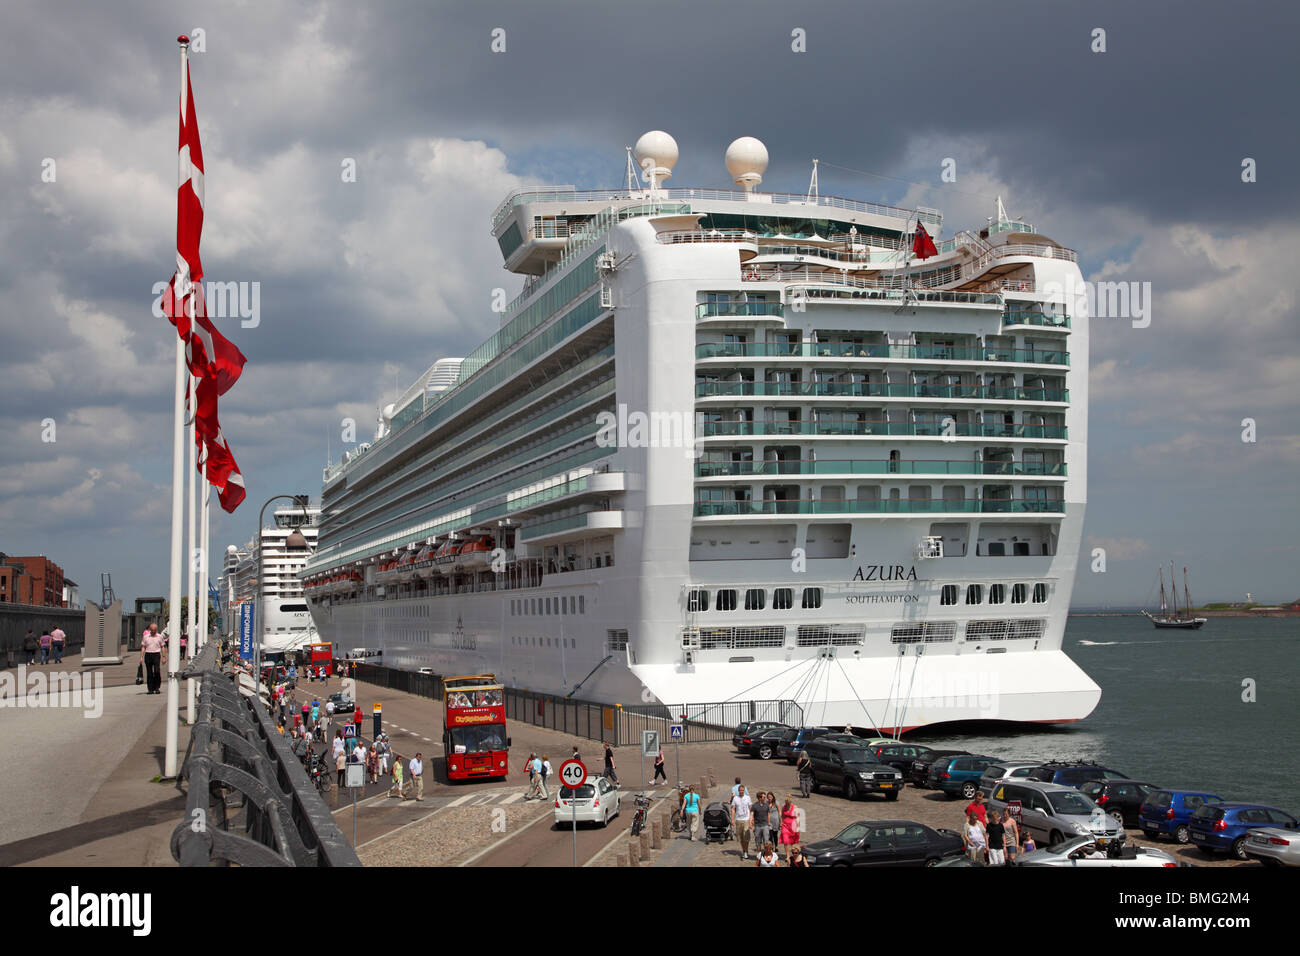 Das P&O Kreuzfahrtschiff MS AZURA, das im Hafen von Kopenhagen anruft. Langelinie Pier und Kai Kopenhagen Hafen an einem warmen Sommertag.. Stockfoto